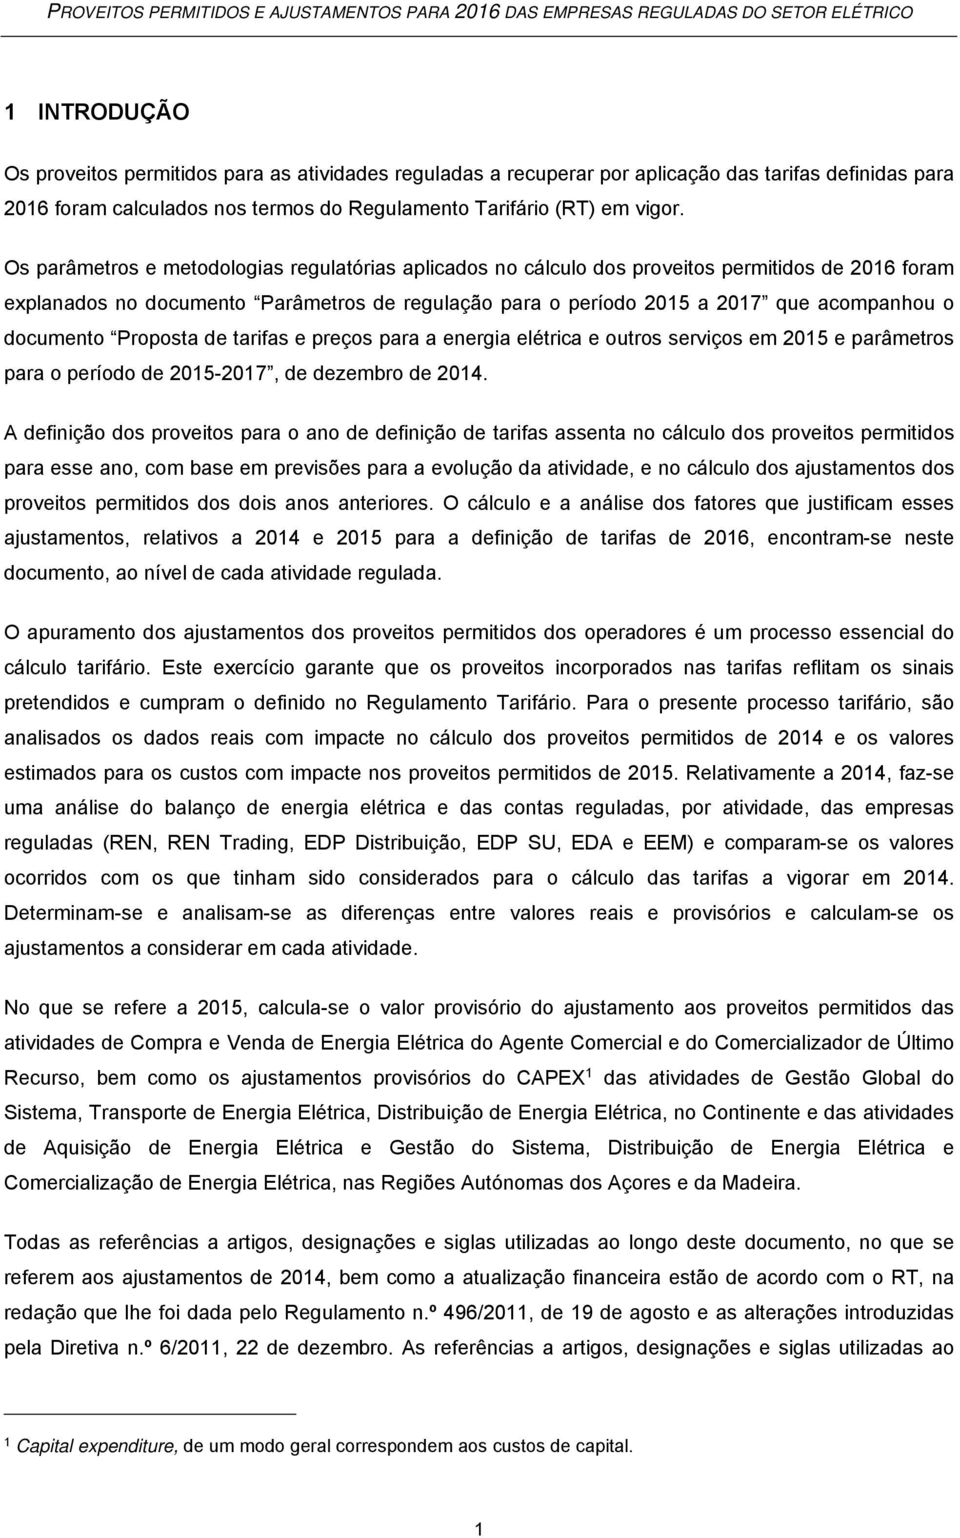 documento Proposta de tarifas e preços para a energia elétrica e outros serviços em 2015 e parâmetros para o período de 2015-2017, de dezembro de 2014.